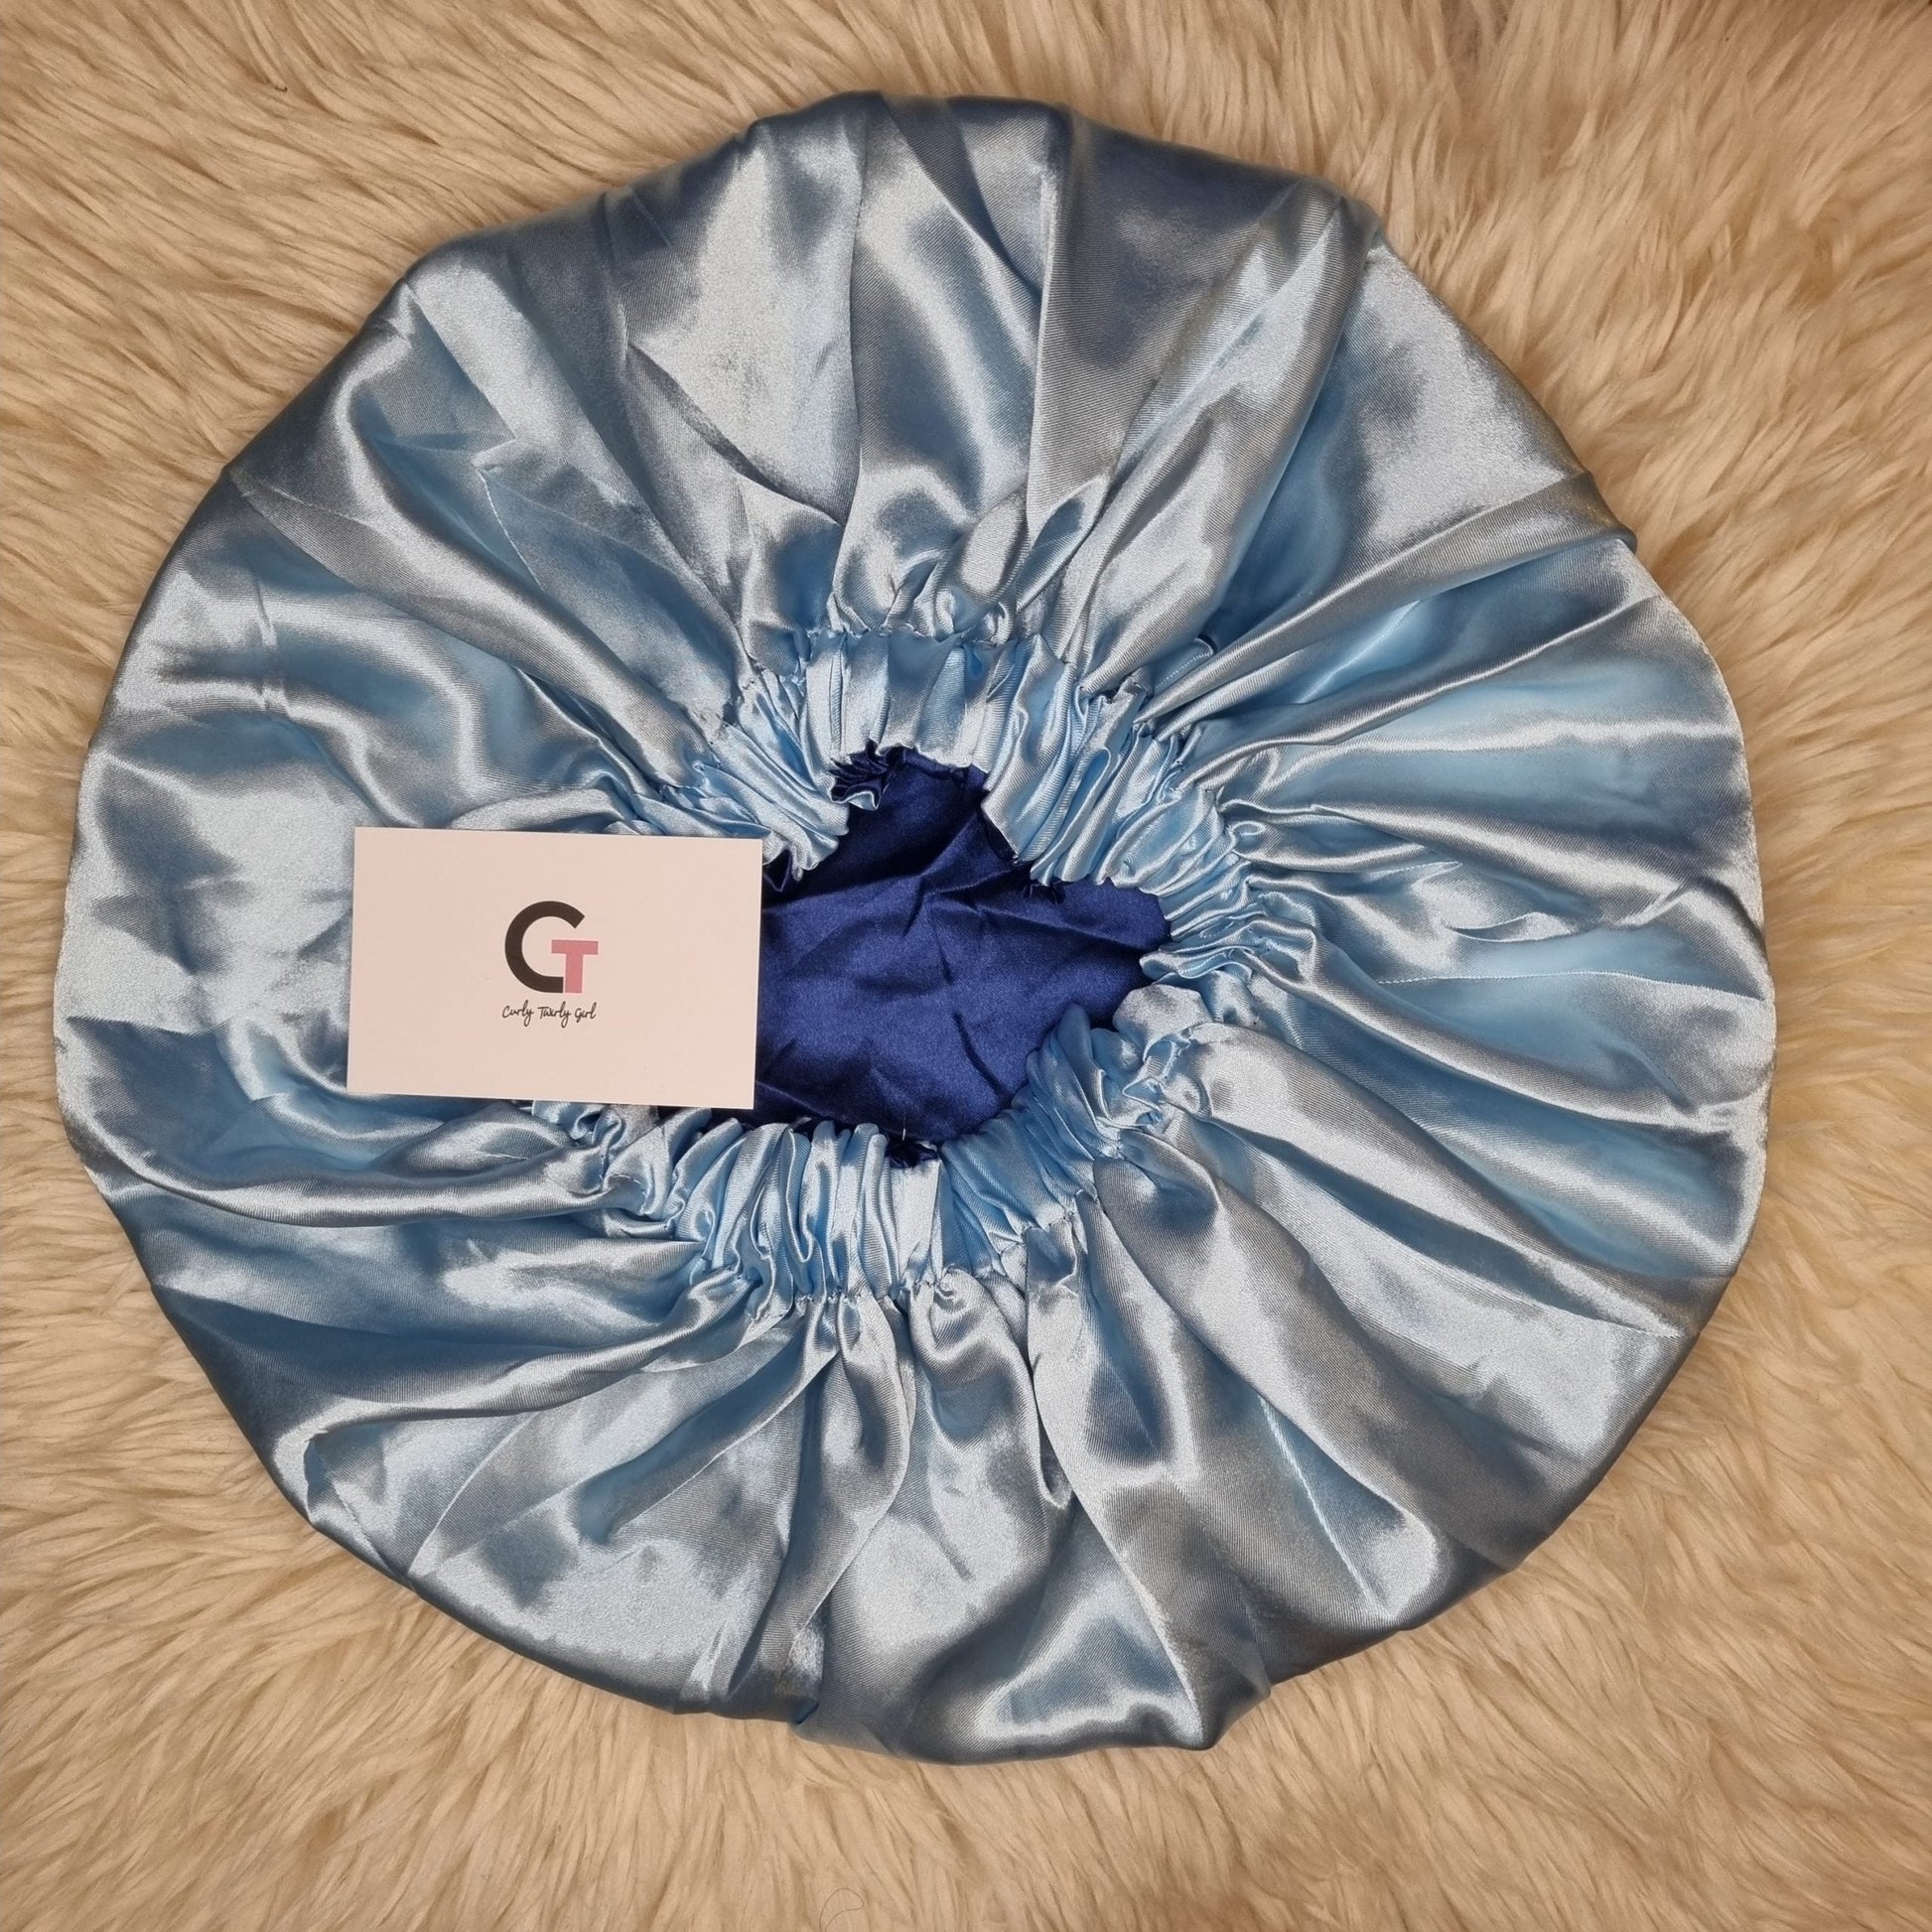 Ice blue reversible satin bonnet on cream rug